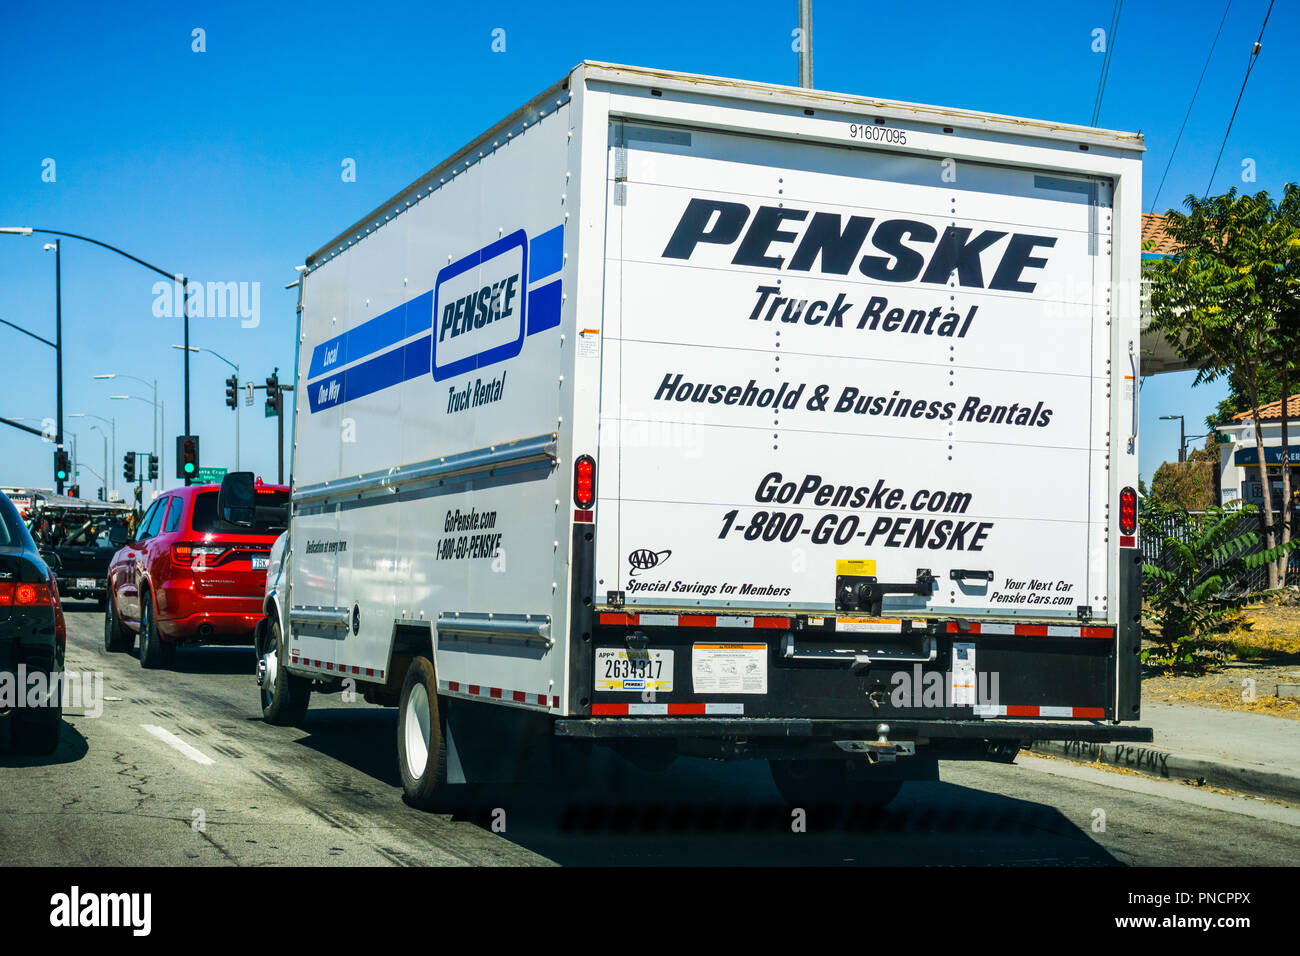 Septembre 11, 2018 San Jose / CA / USA - Penske a loué la conduite de camions sur l'autoroute dans le sud de San Francisco bay area Banque D'Images